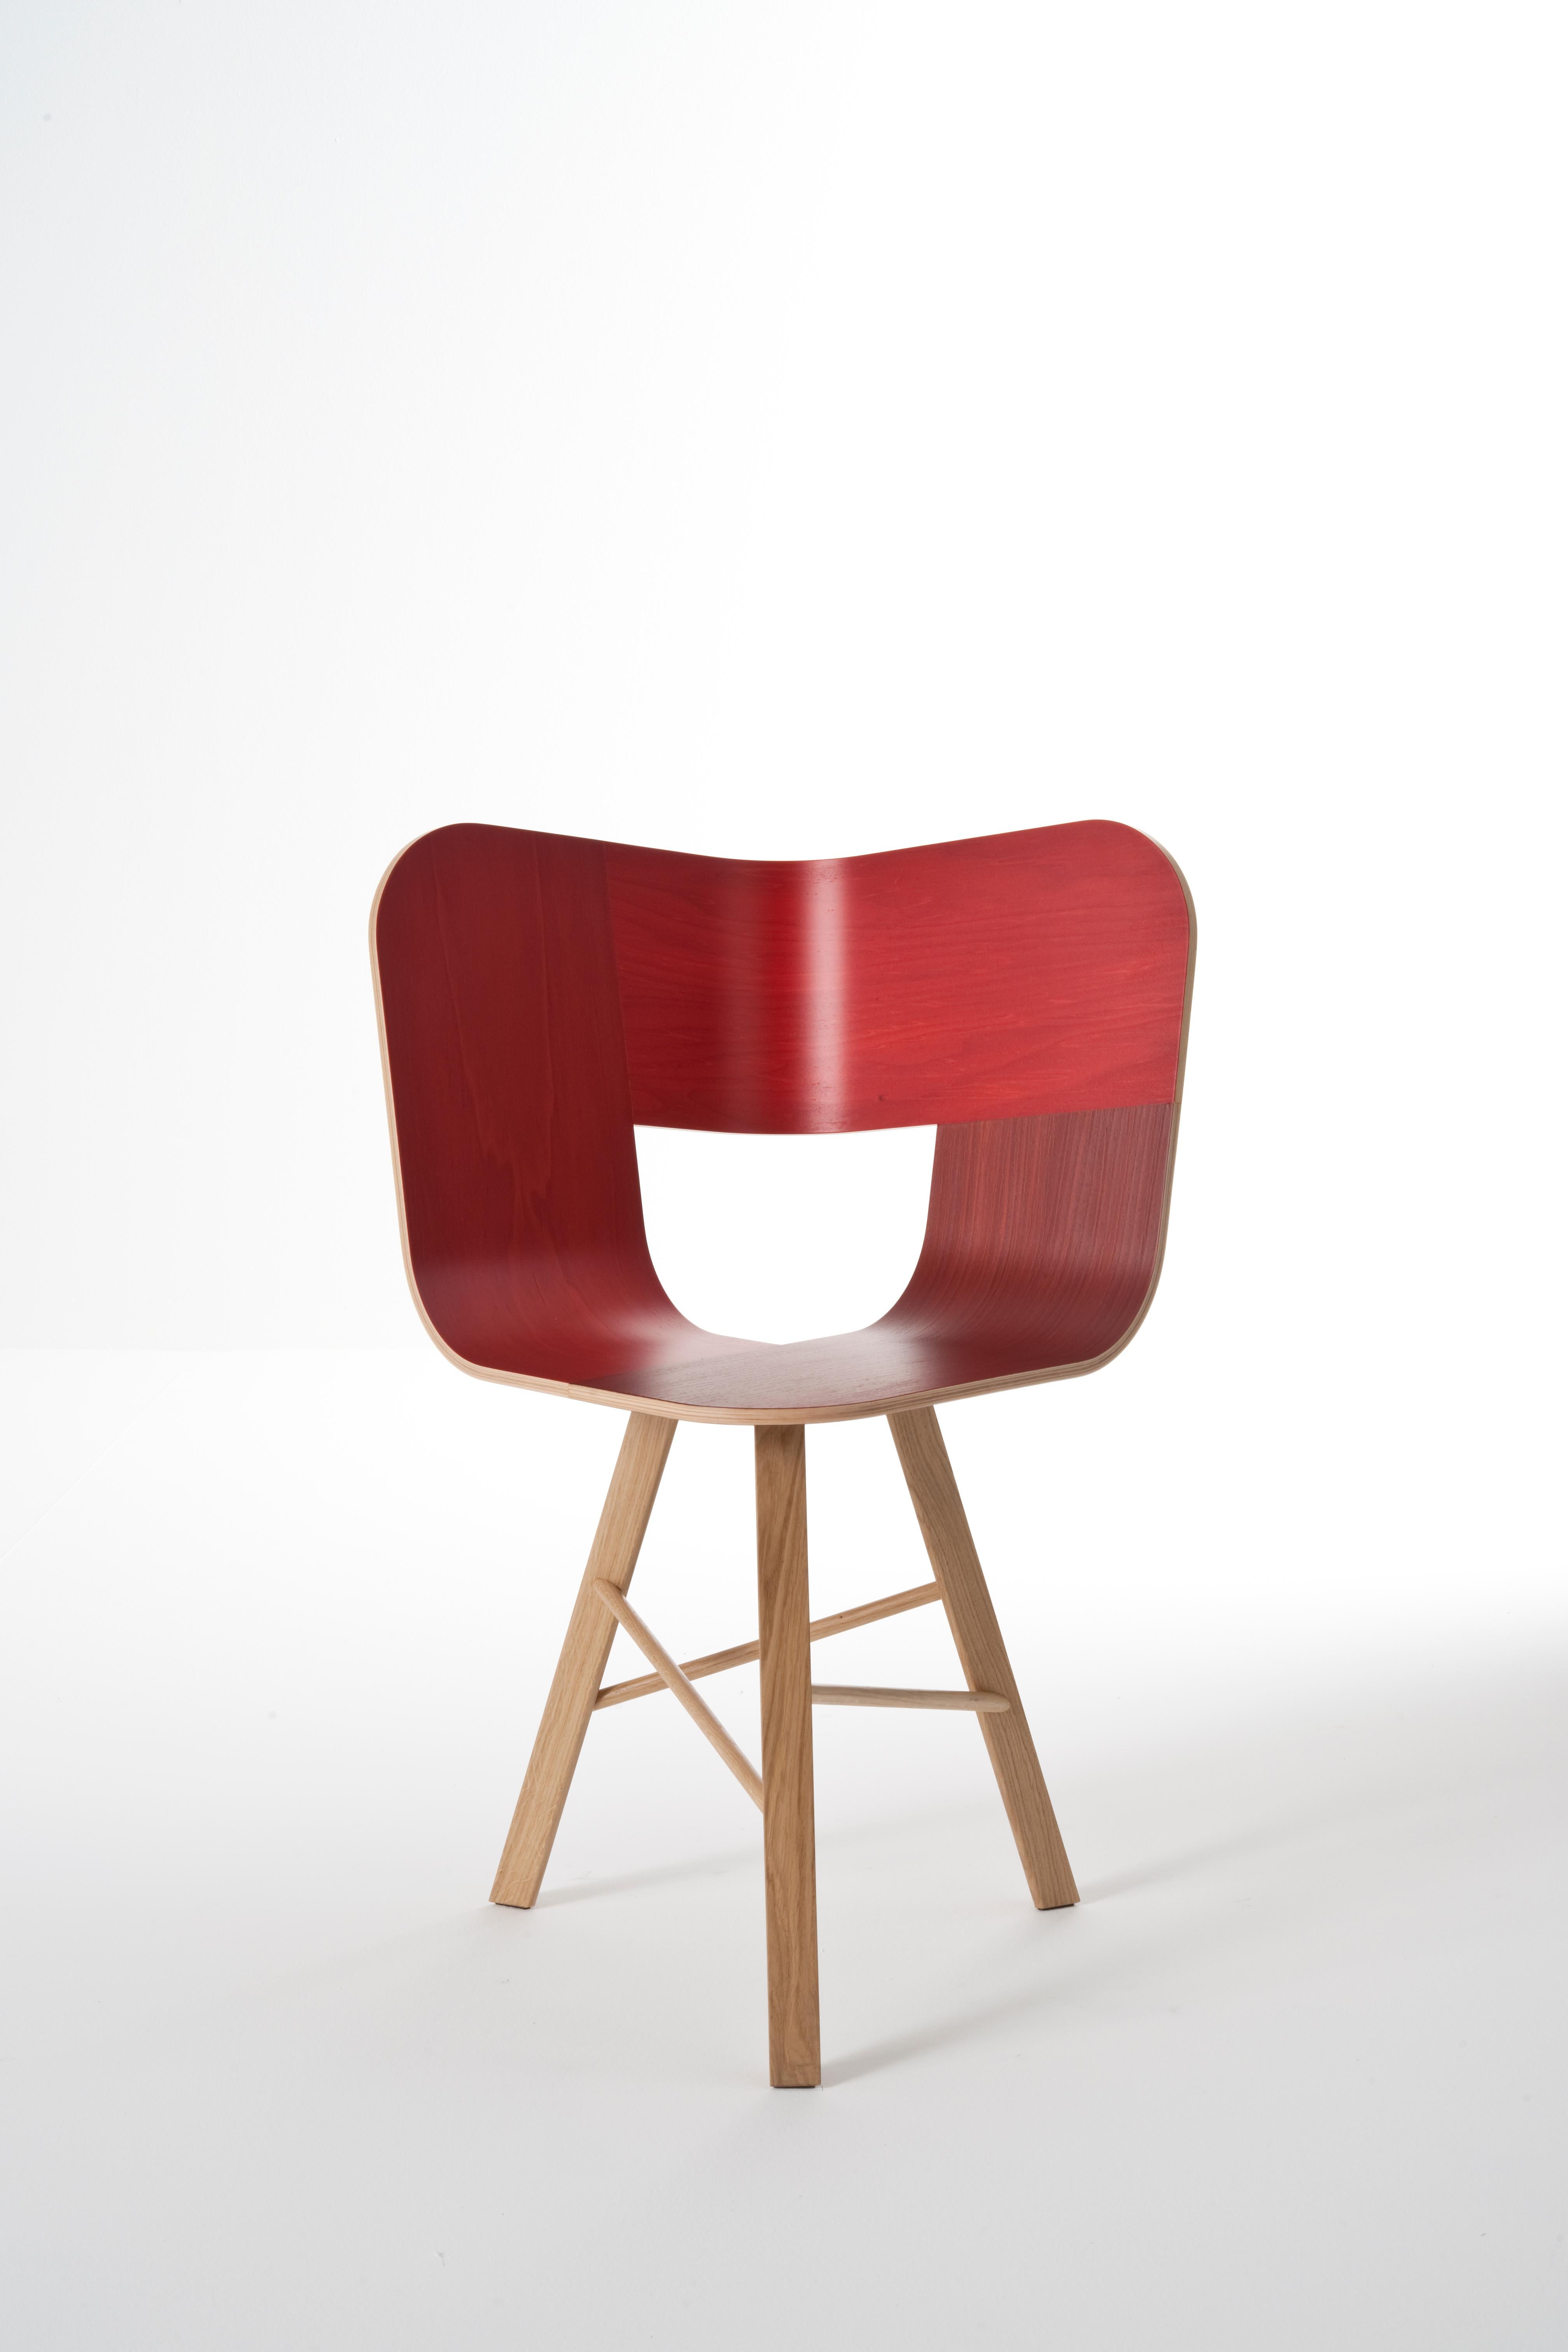 Chaise à trois pieds en bois Tria, rouge par Colé Italia avec Lorenz+Kaz
(siège de couleur RAL - pieds peints de couleur RAL)
Dimensions : H 82,5, P 52, L 61 cm
MATERIAL : chaise en contreplaqué ; base en chêne massif à 3 pieds.

Egalement